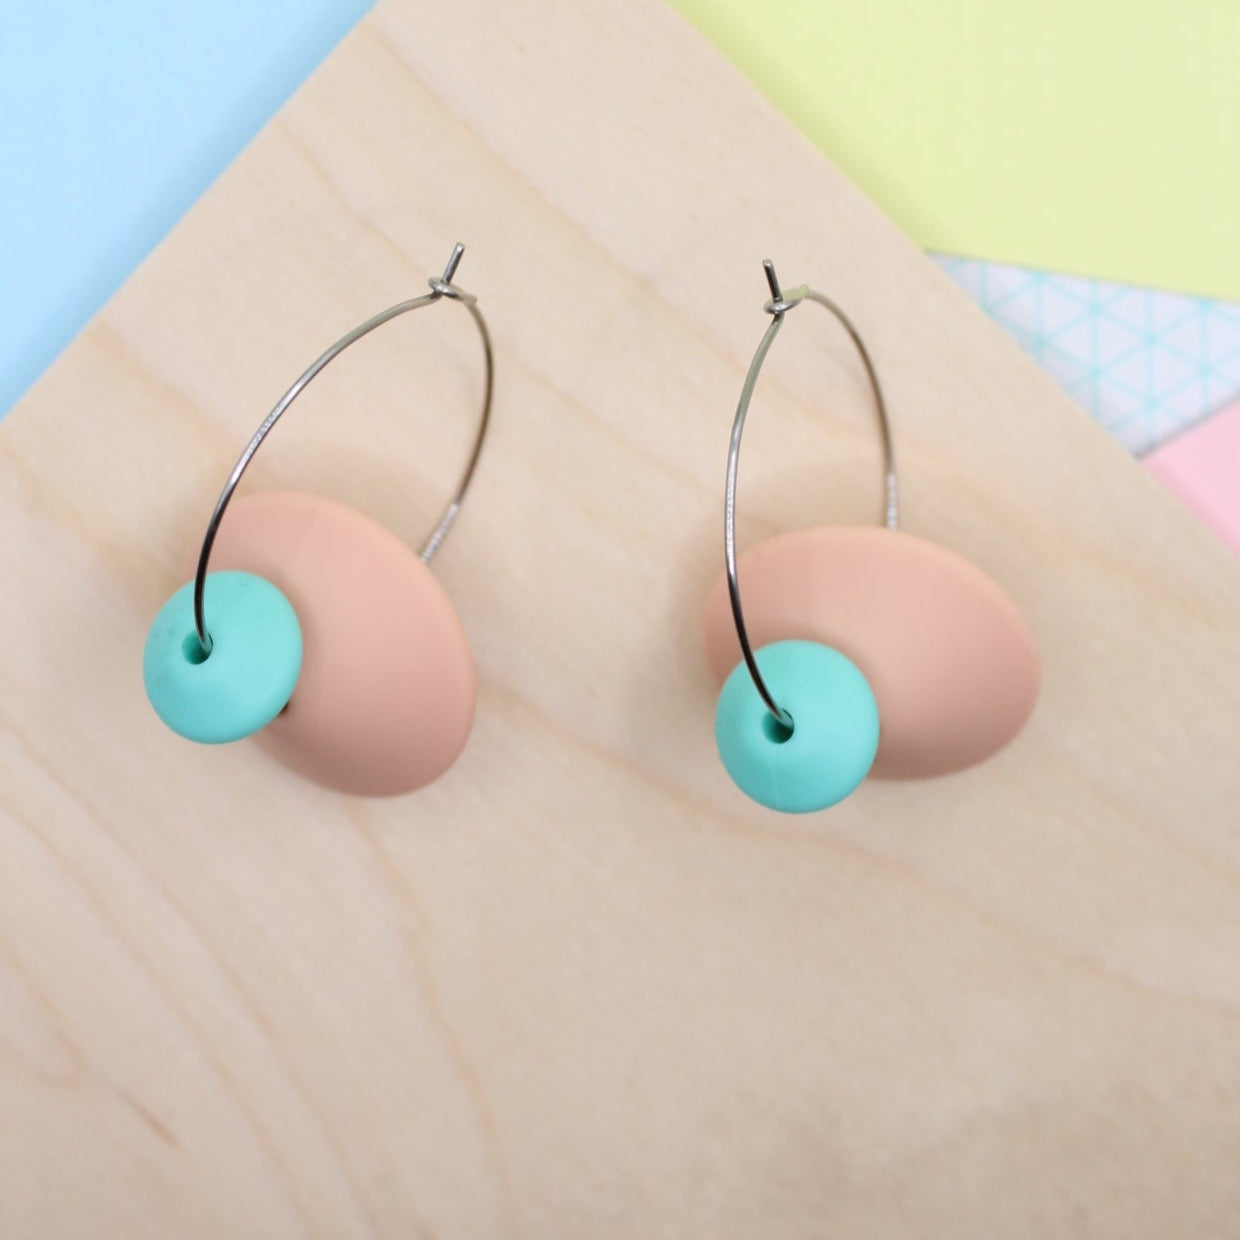 Statement Silicone Hoop Dangle Earrings - Peachy Pink. 30mm Hoops